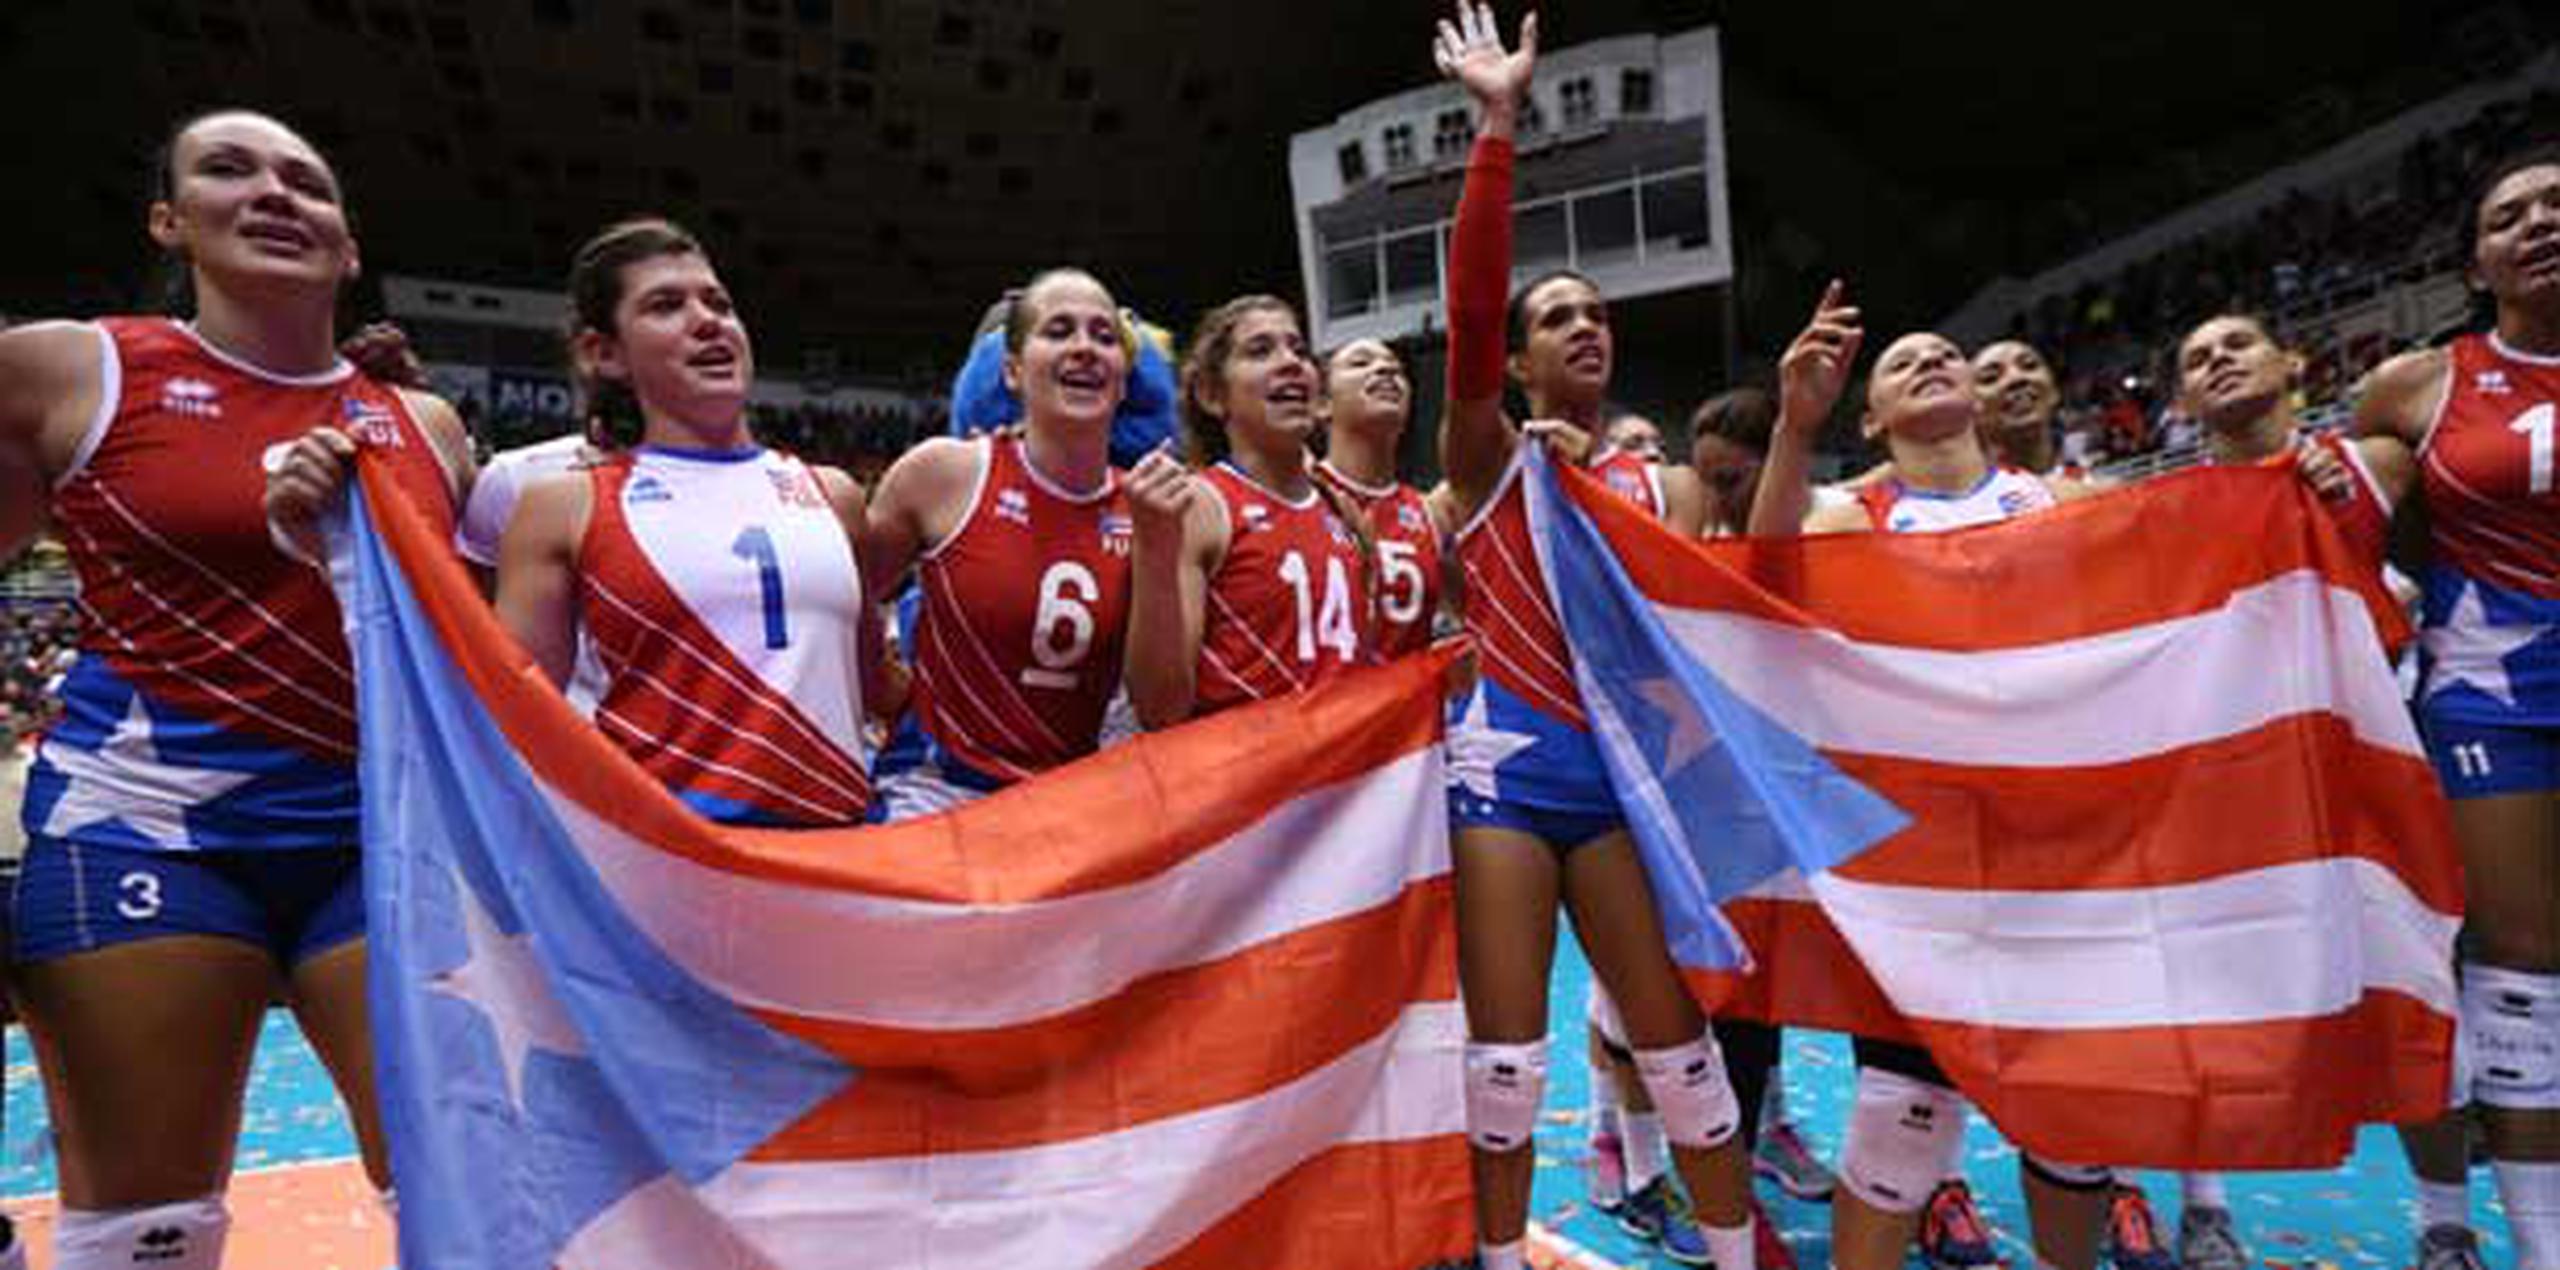 La Selección de Puerto Rico jugará Río 2016 en el Grupo B junto a Estados Unidos, China, Italia, Serbia, Holanda. (juan.martinez@gfrmedia.com)